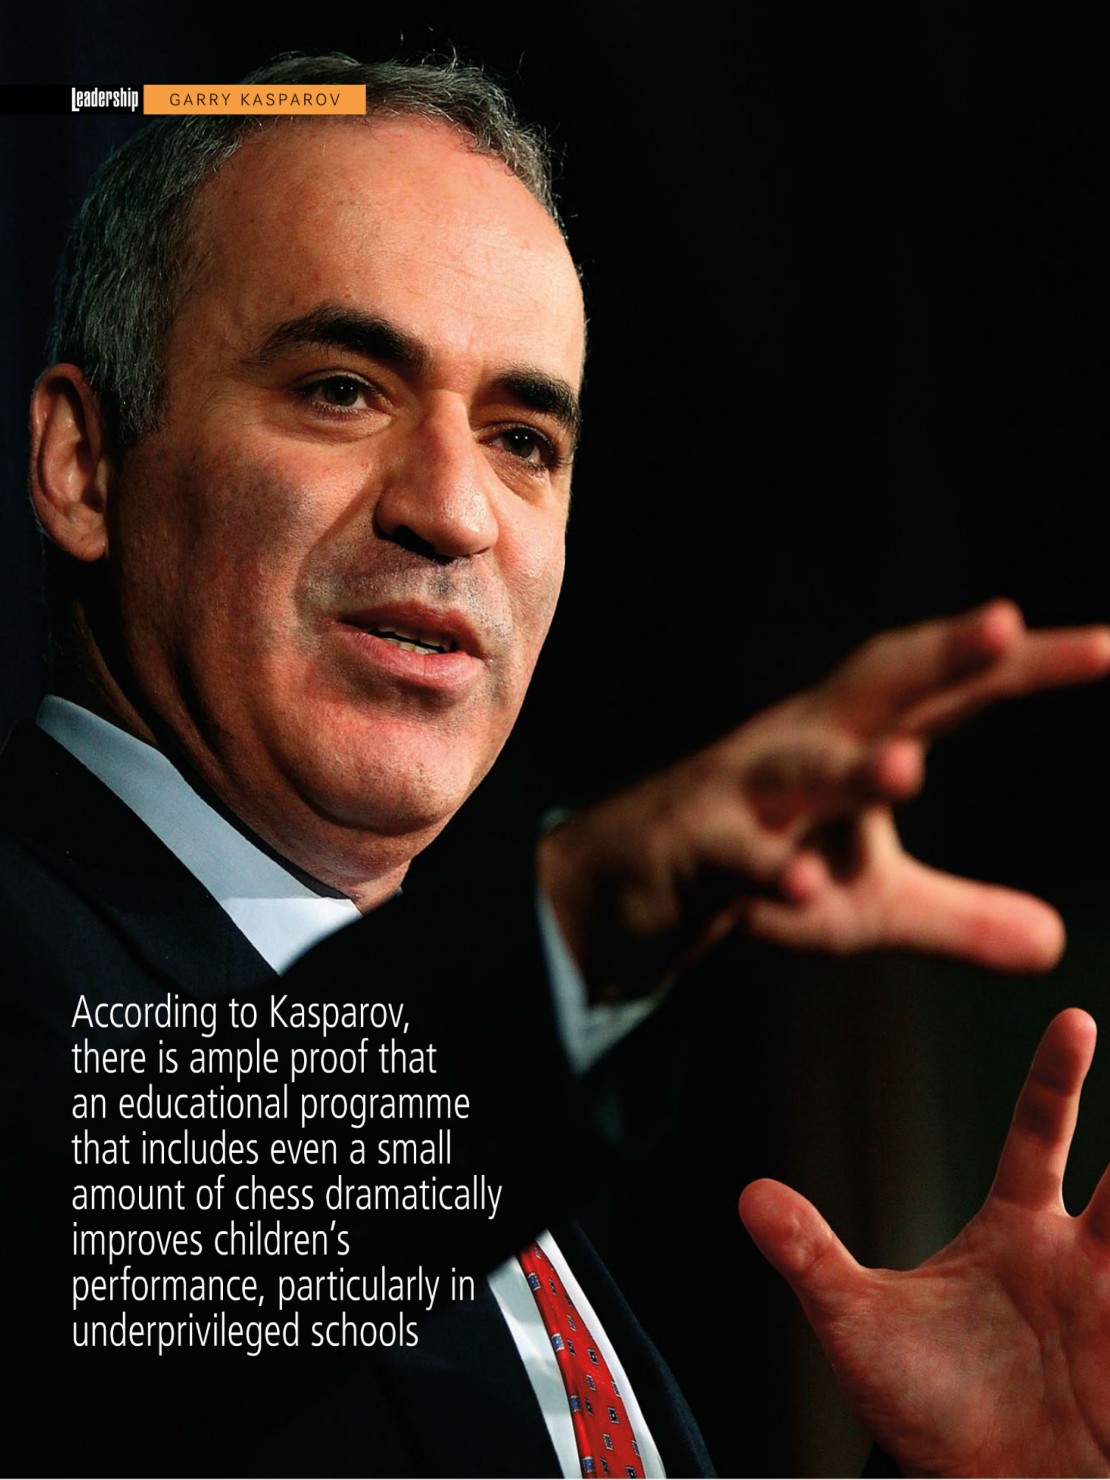 Giordano-Kasparov-1.jpg